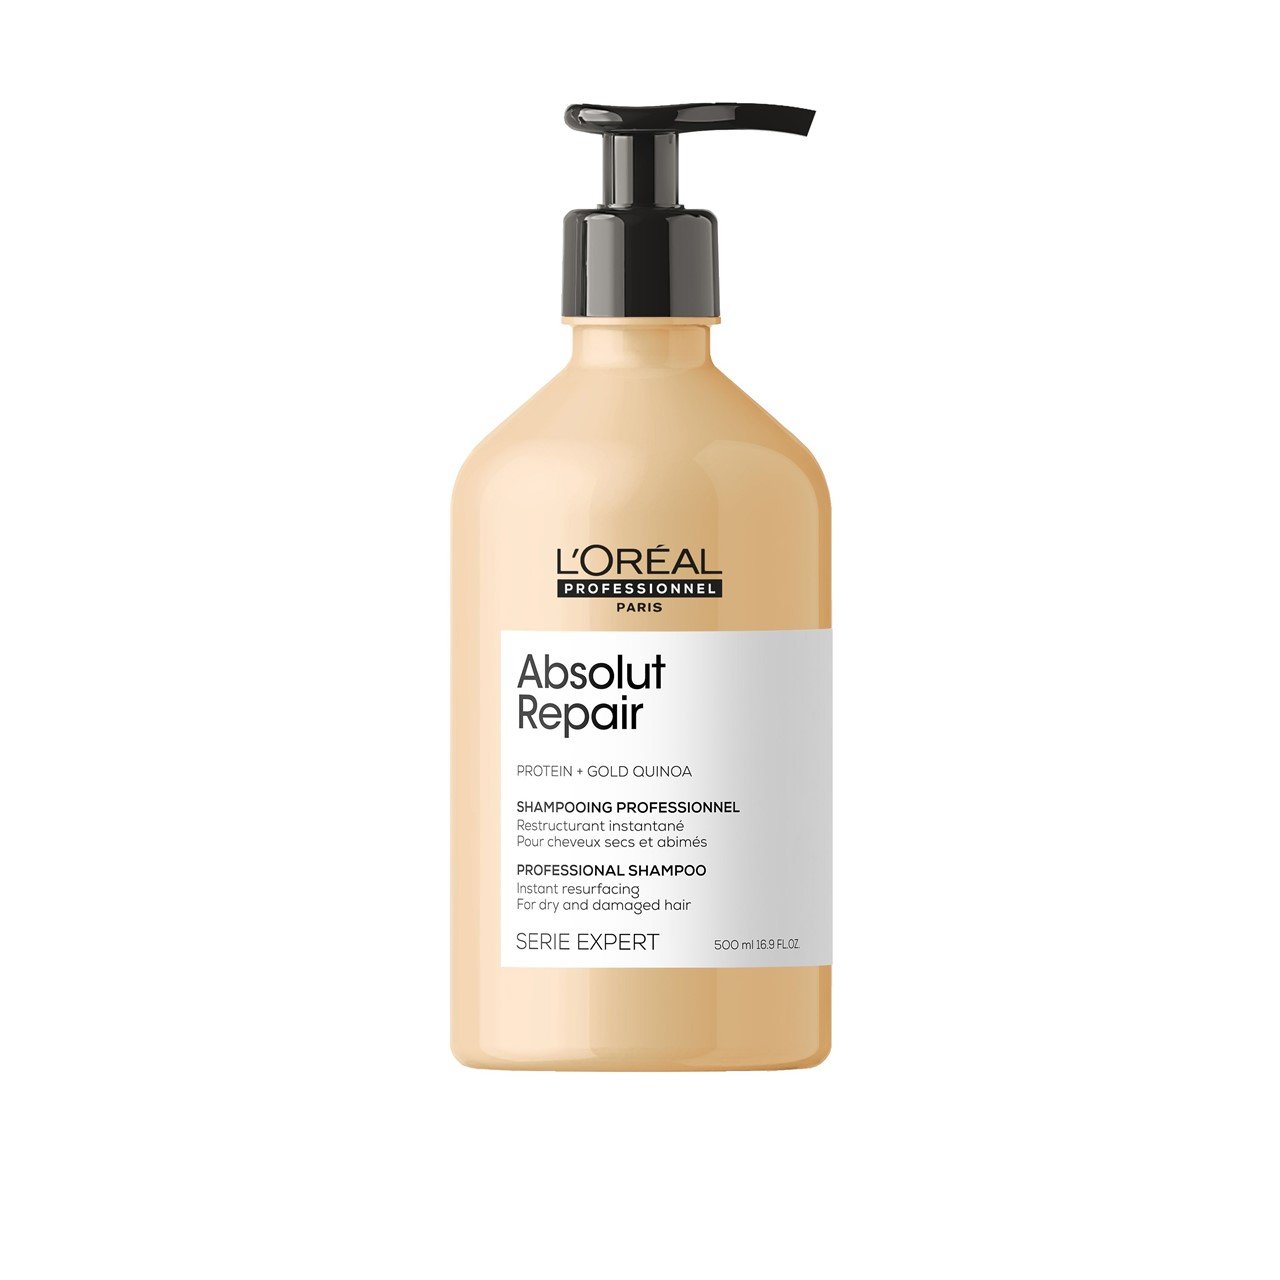 L'Oréal Professionnel Série Expert Absolut Repair Shampoo 500ml (16.91fl oz)